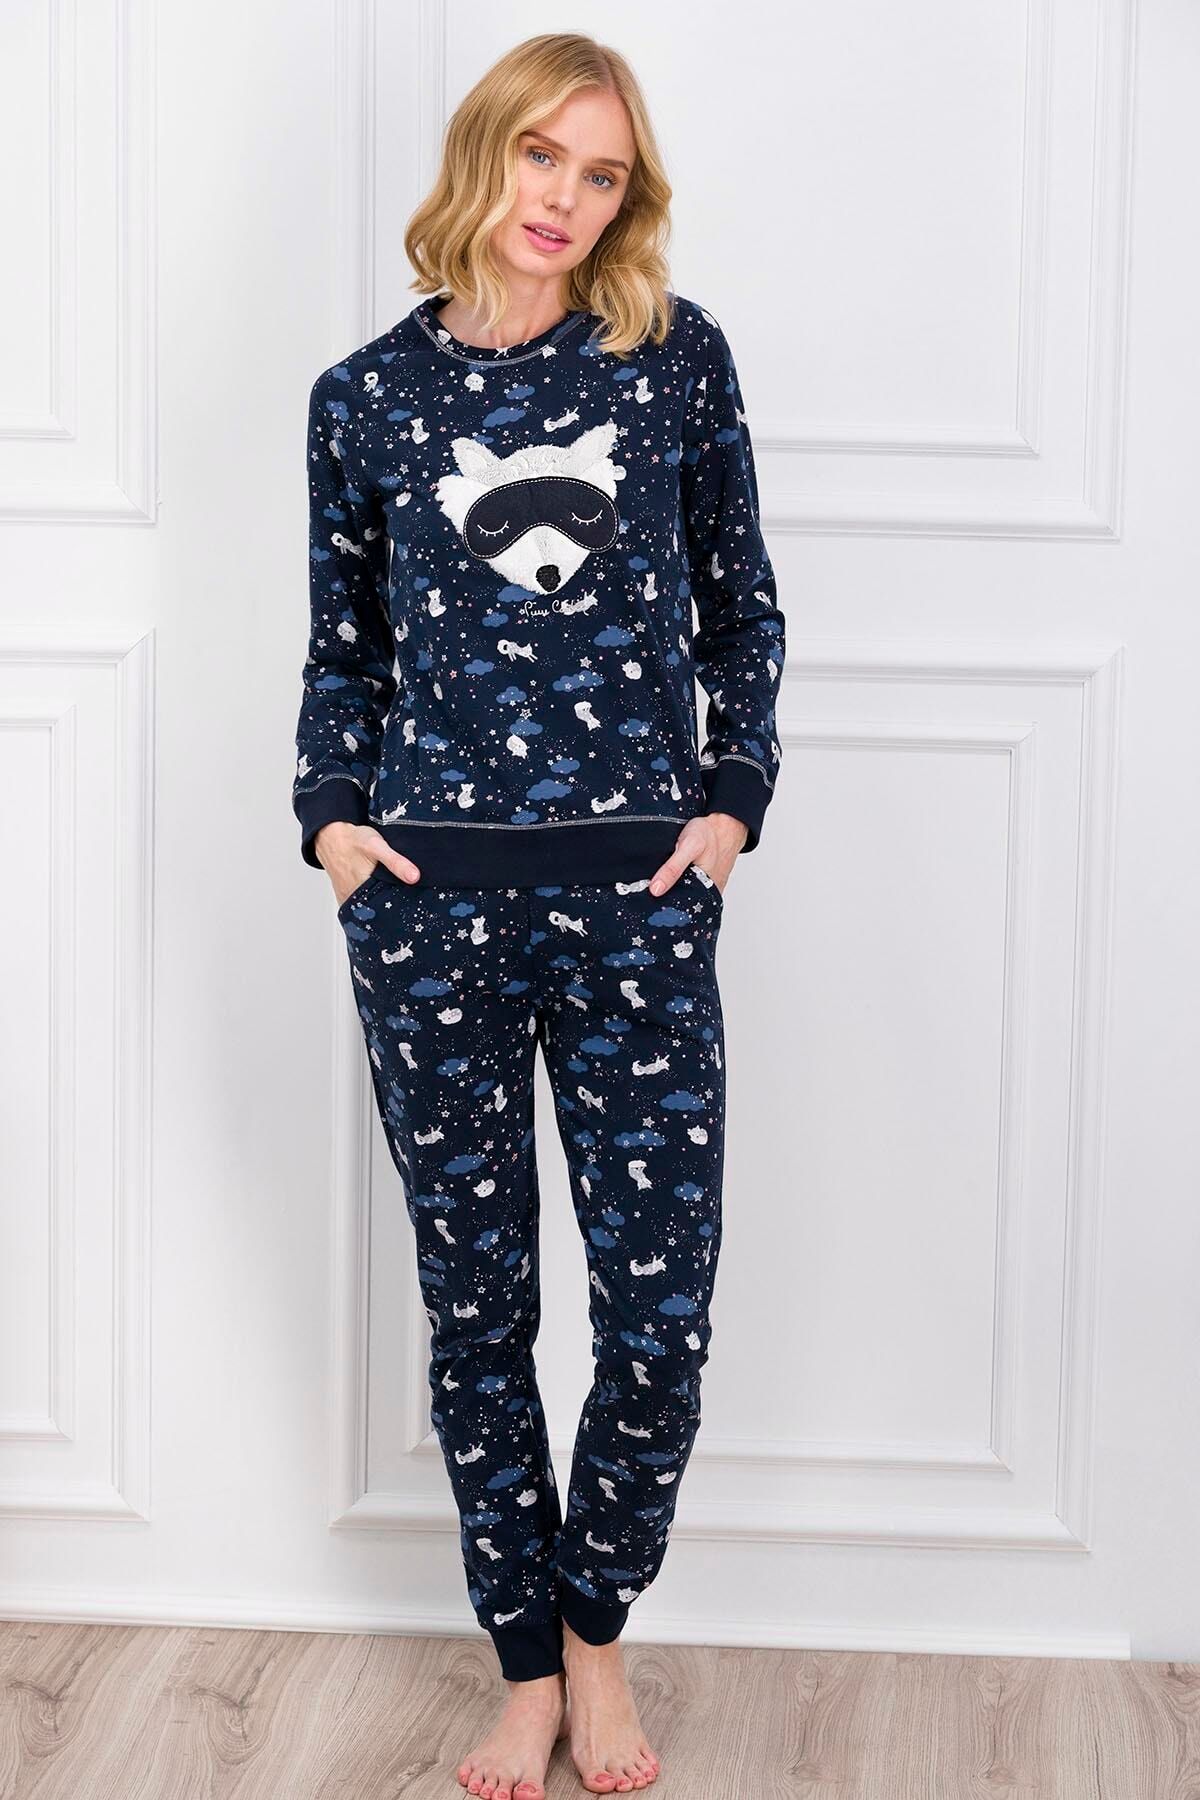 Pierre Cardin Kadın Pijama Takımı